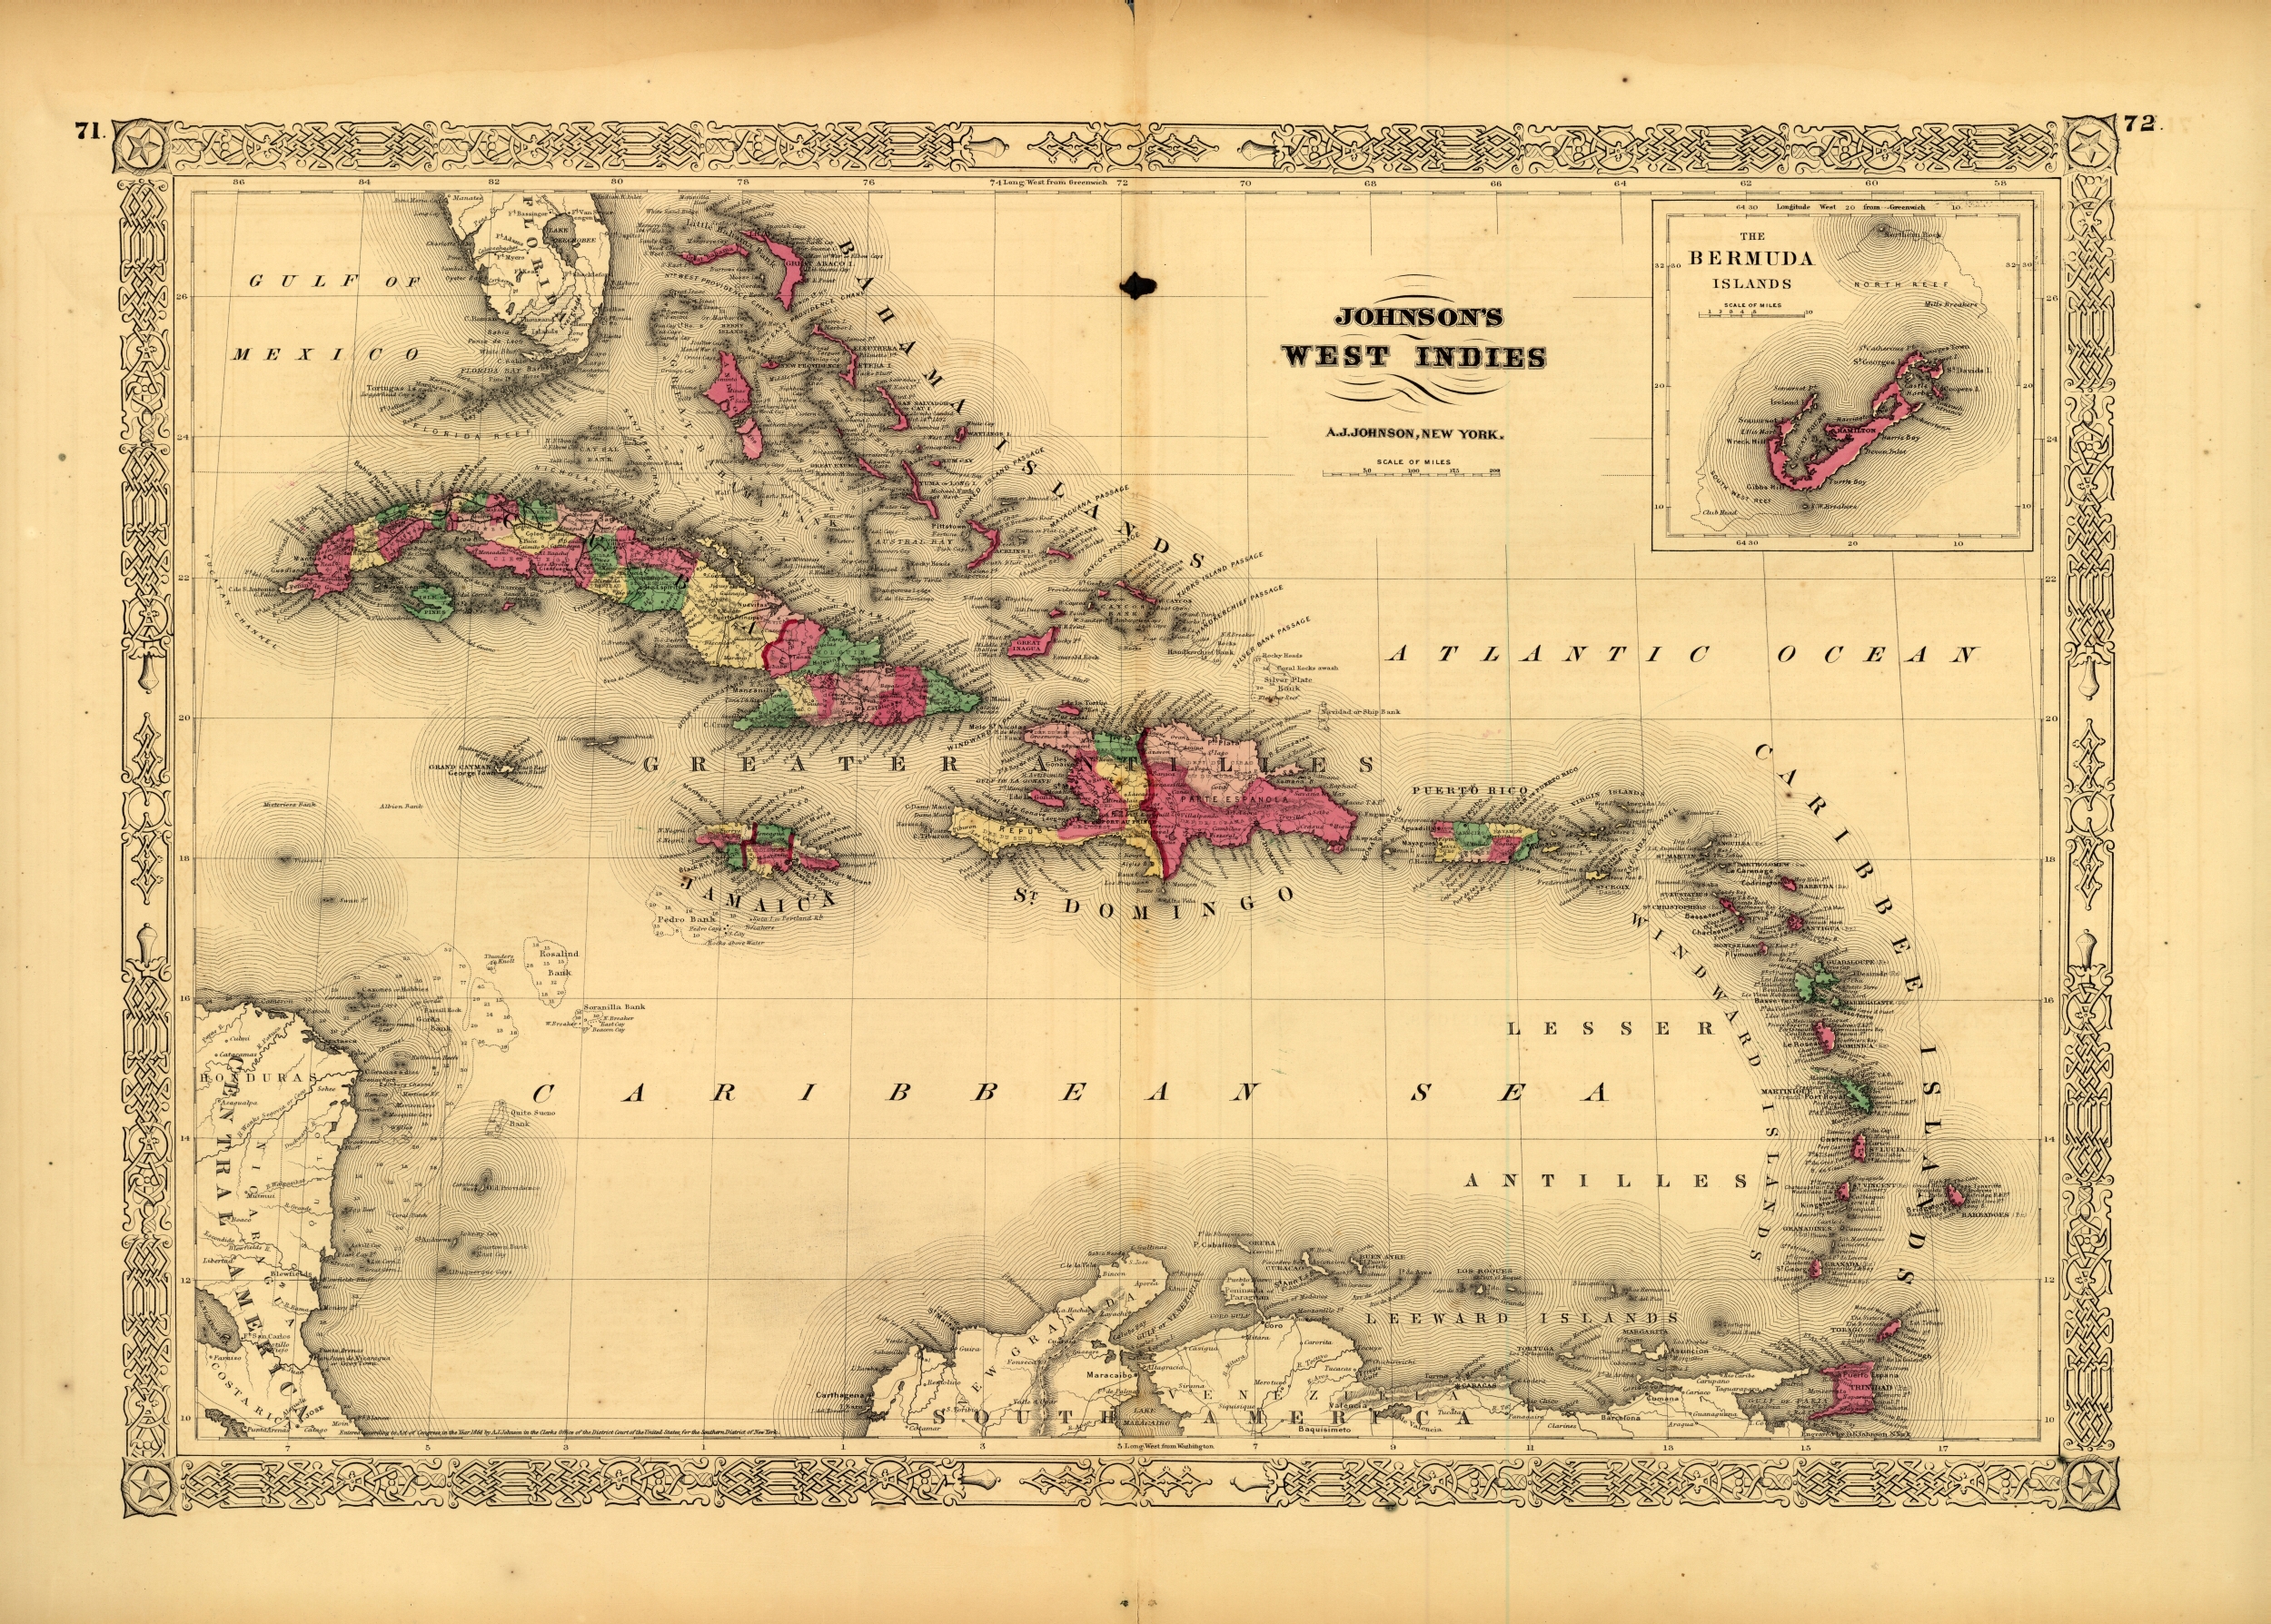 Johnson's West Indies, 1864